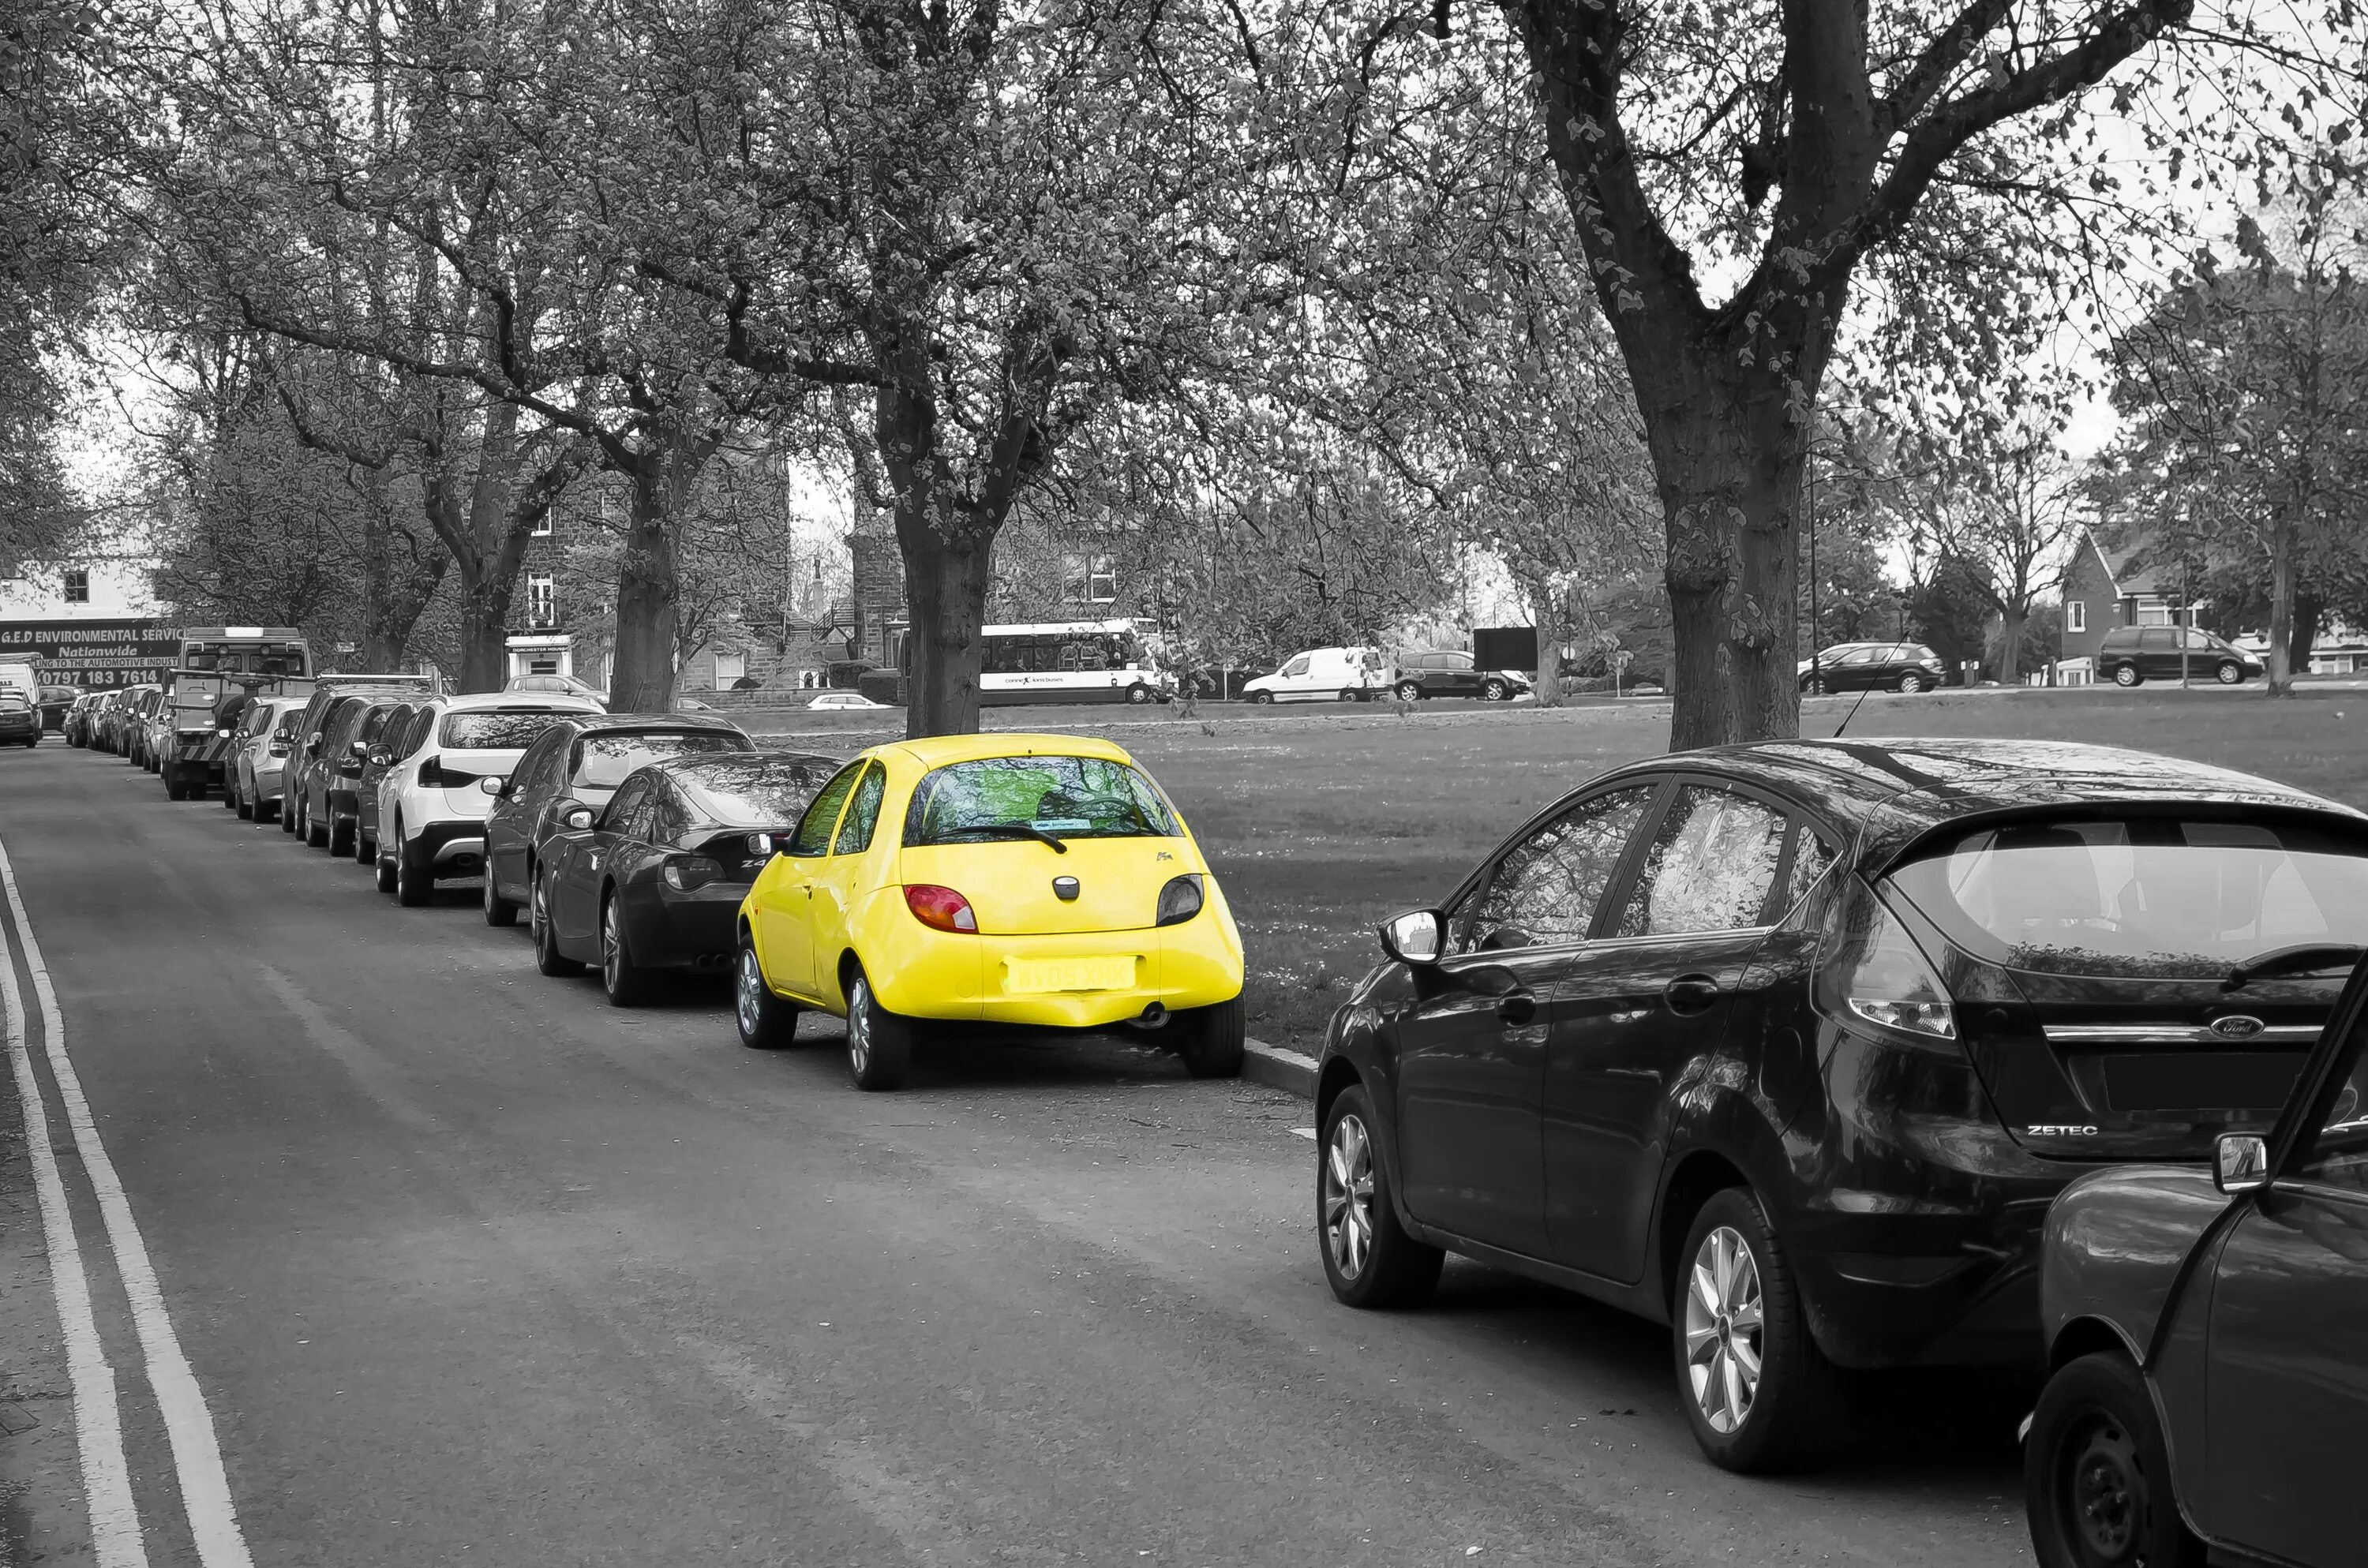 Улица с припаркованными автомобилями. Машина на улице. Vfibuf YF EKWBT. Желтая машина на улице.